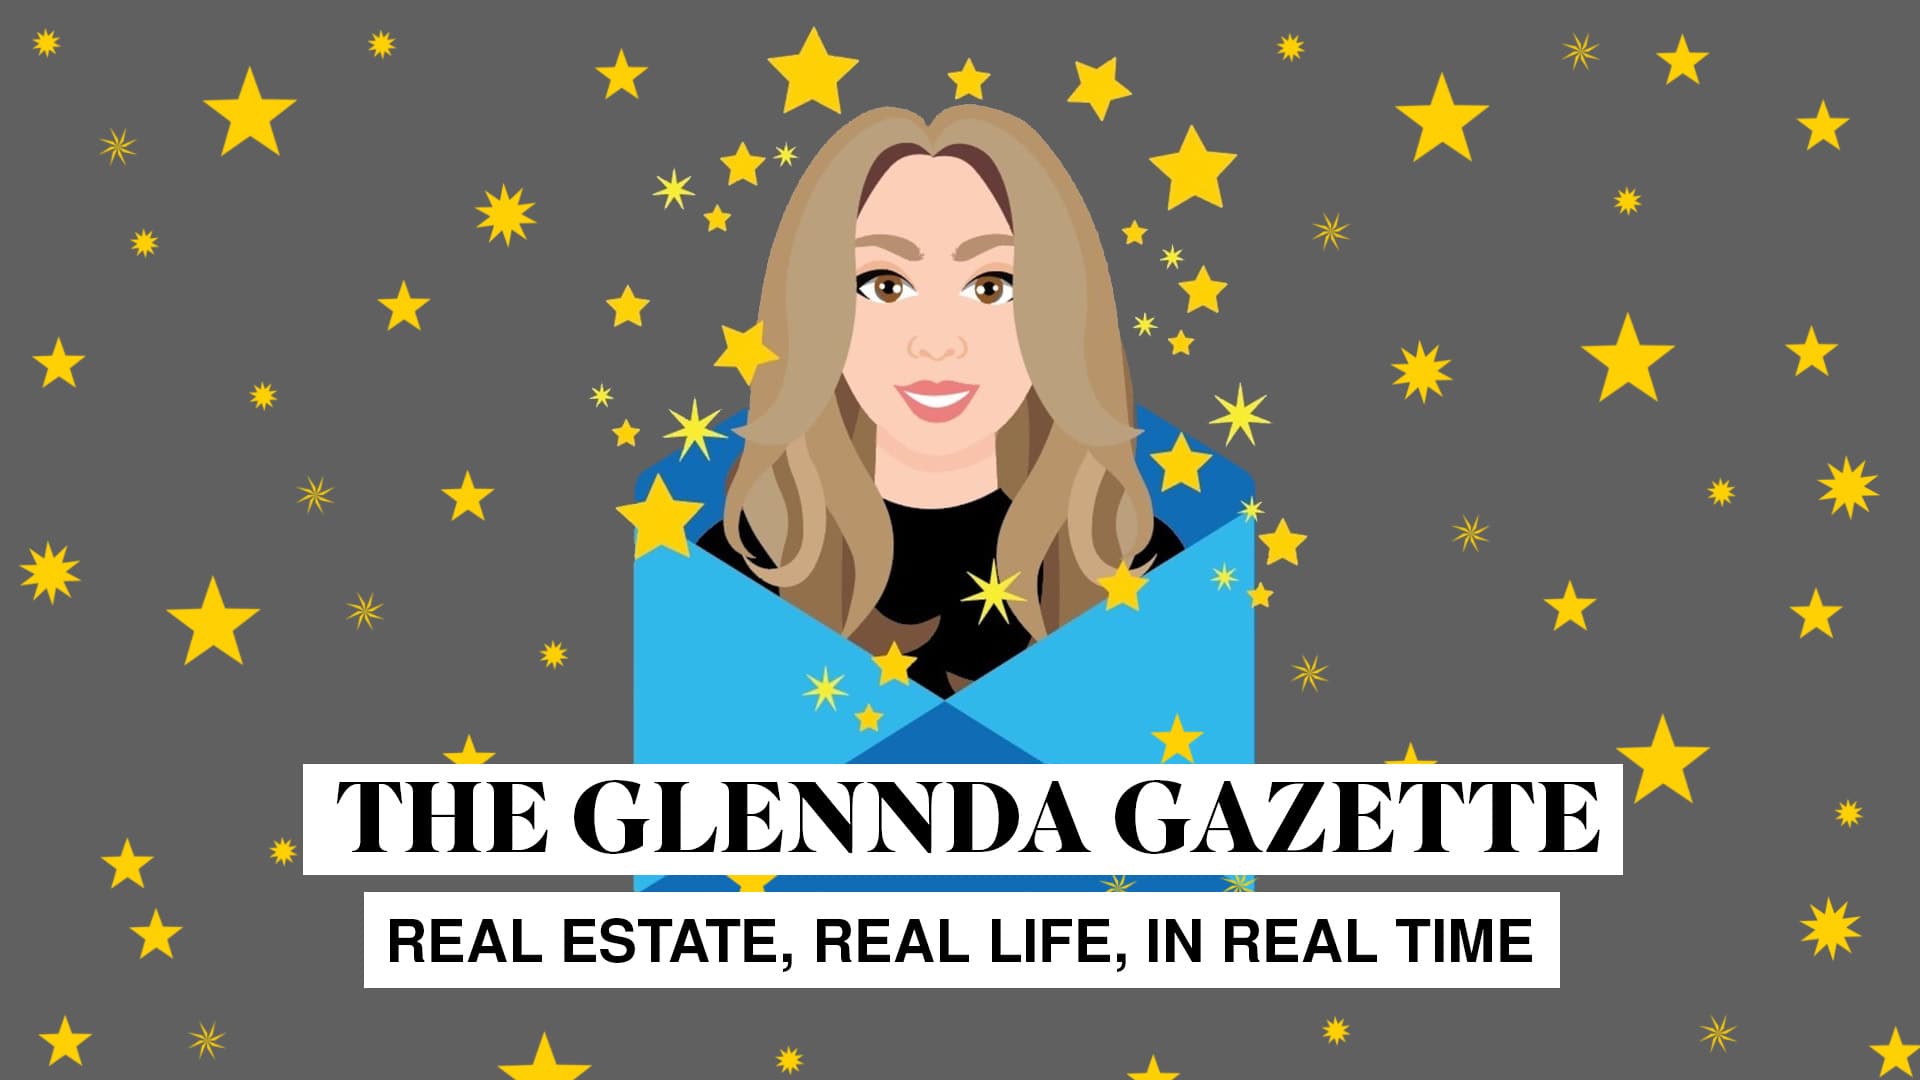 The Glennda Gazette